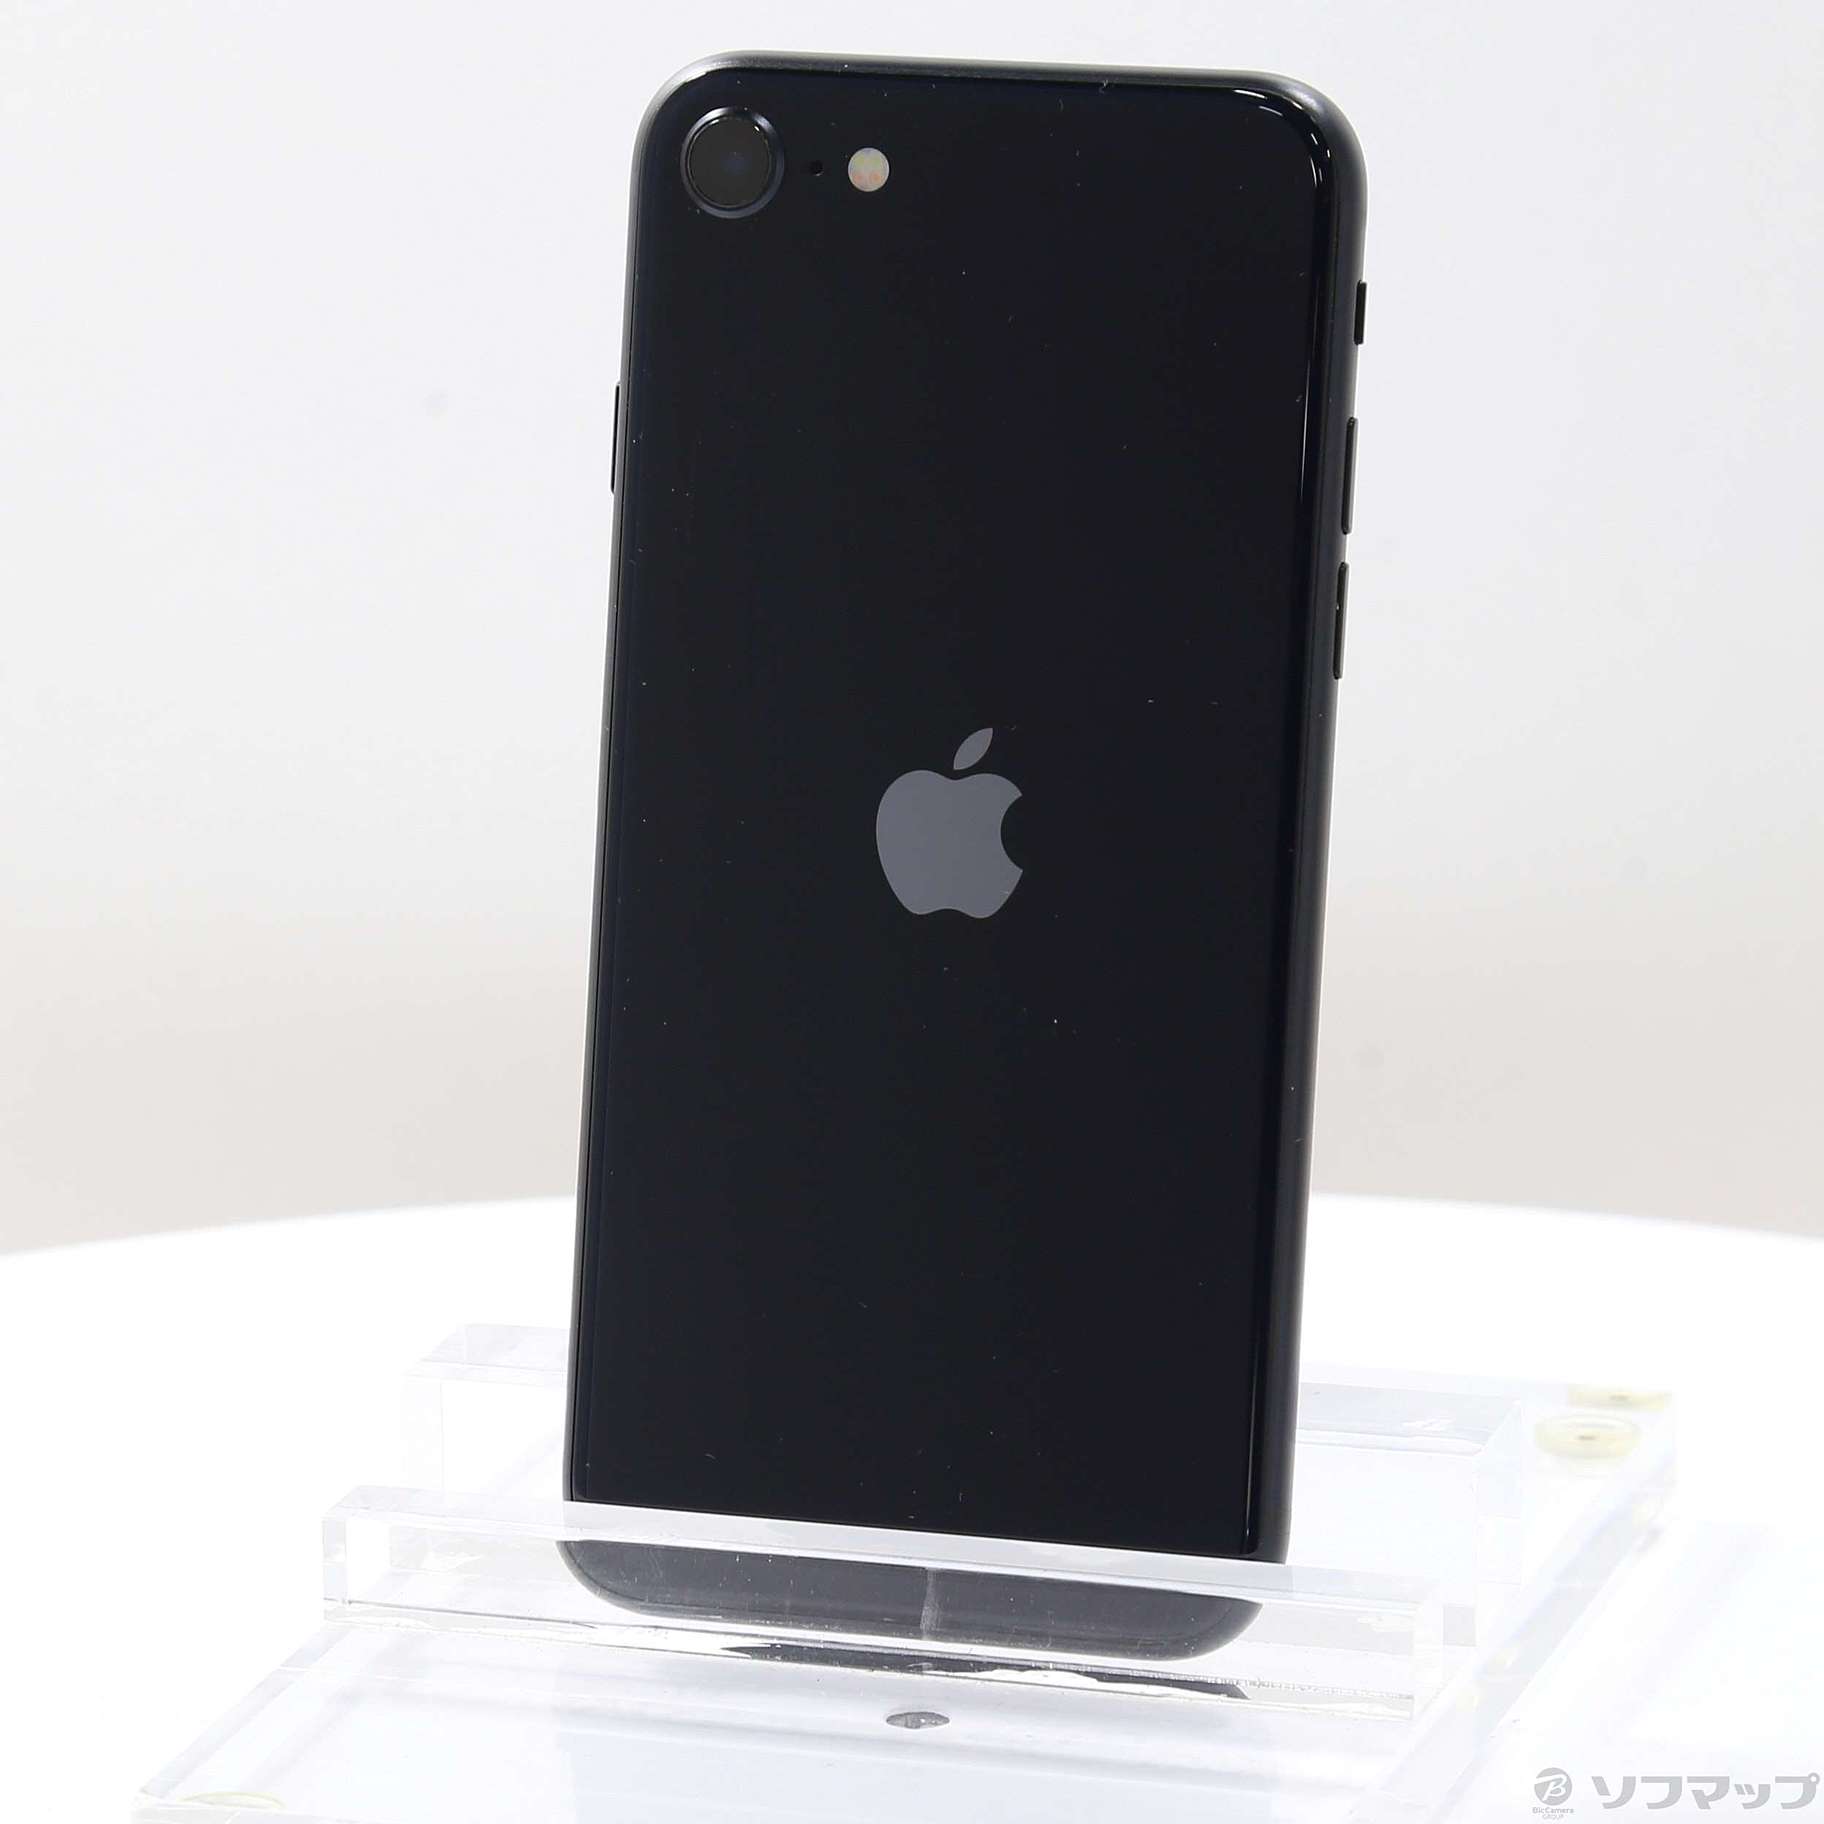 iPhone SE 第3世代 128GB SIMフリー ミッドナイト商品の状態やや傷や汚れあり